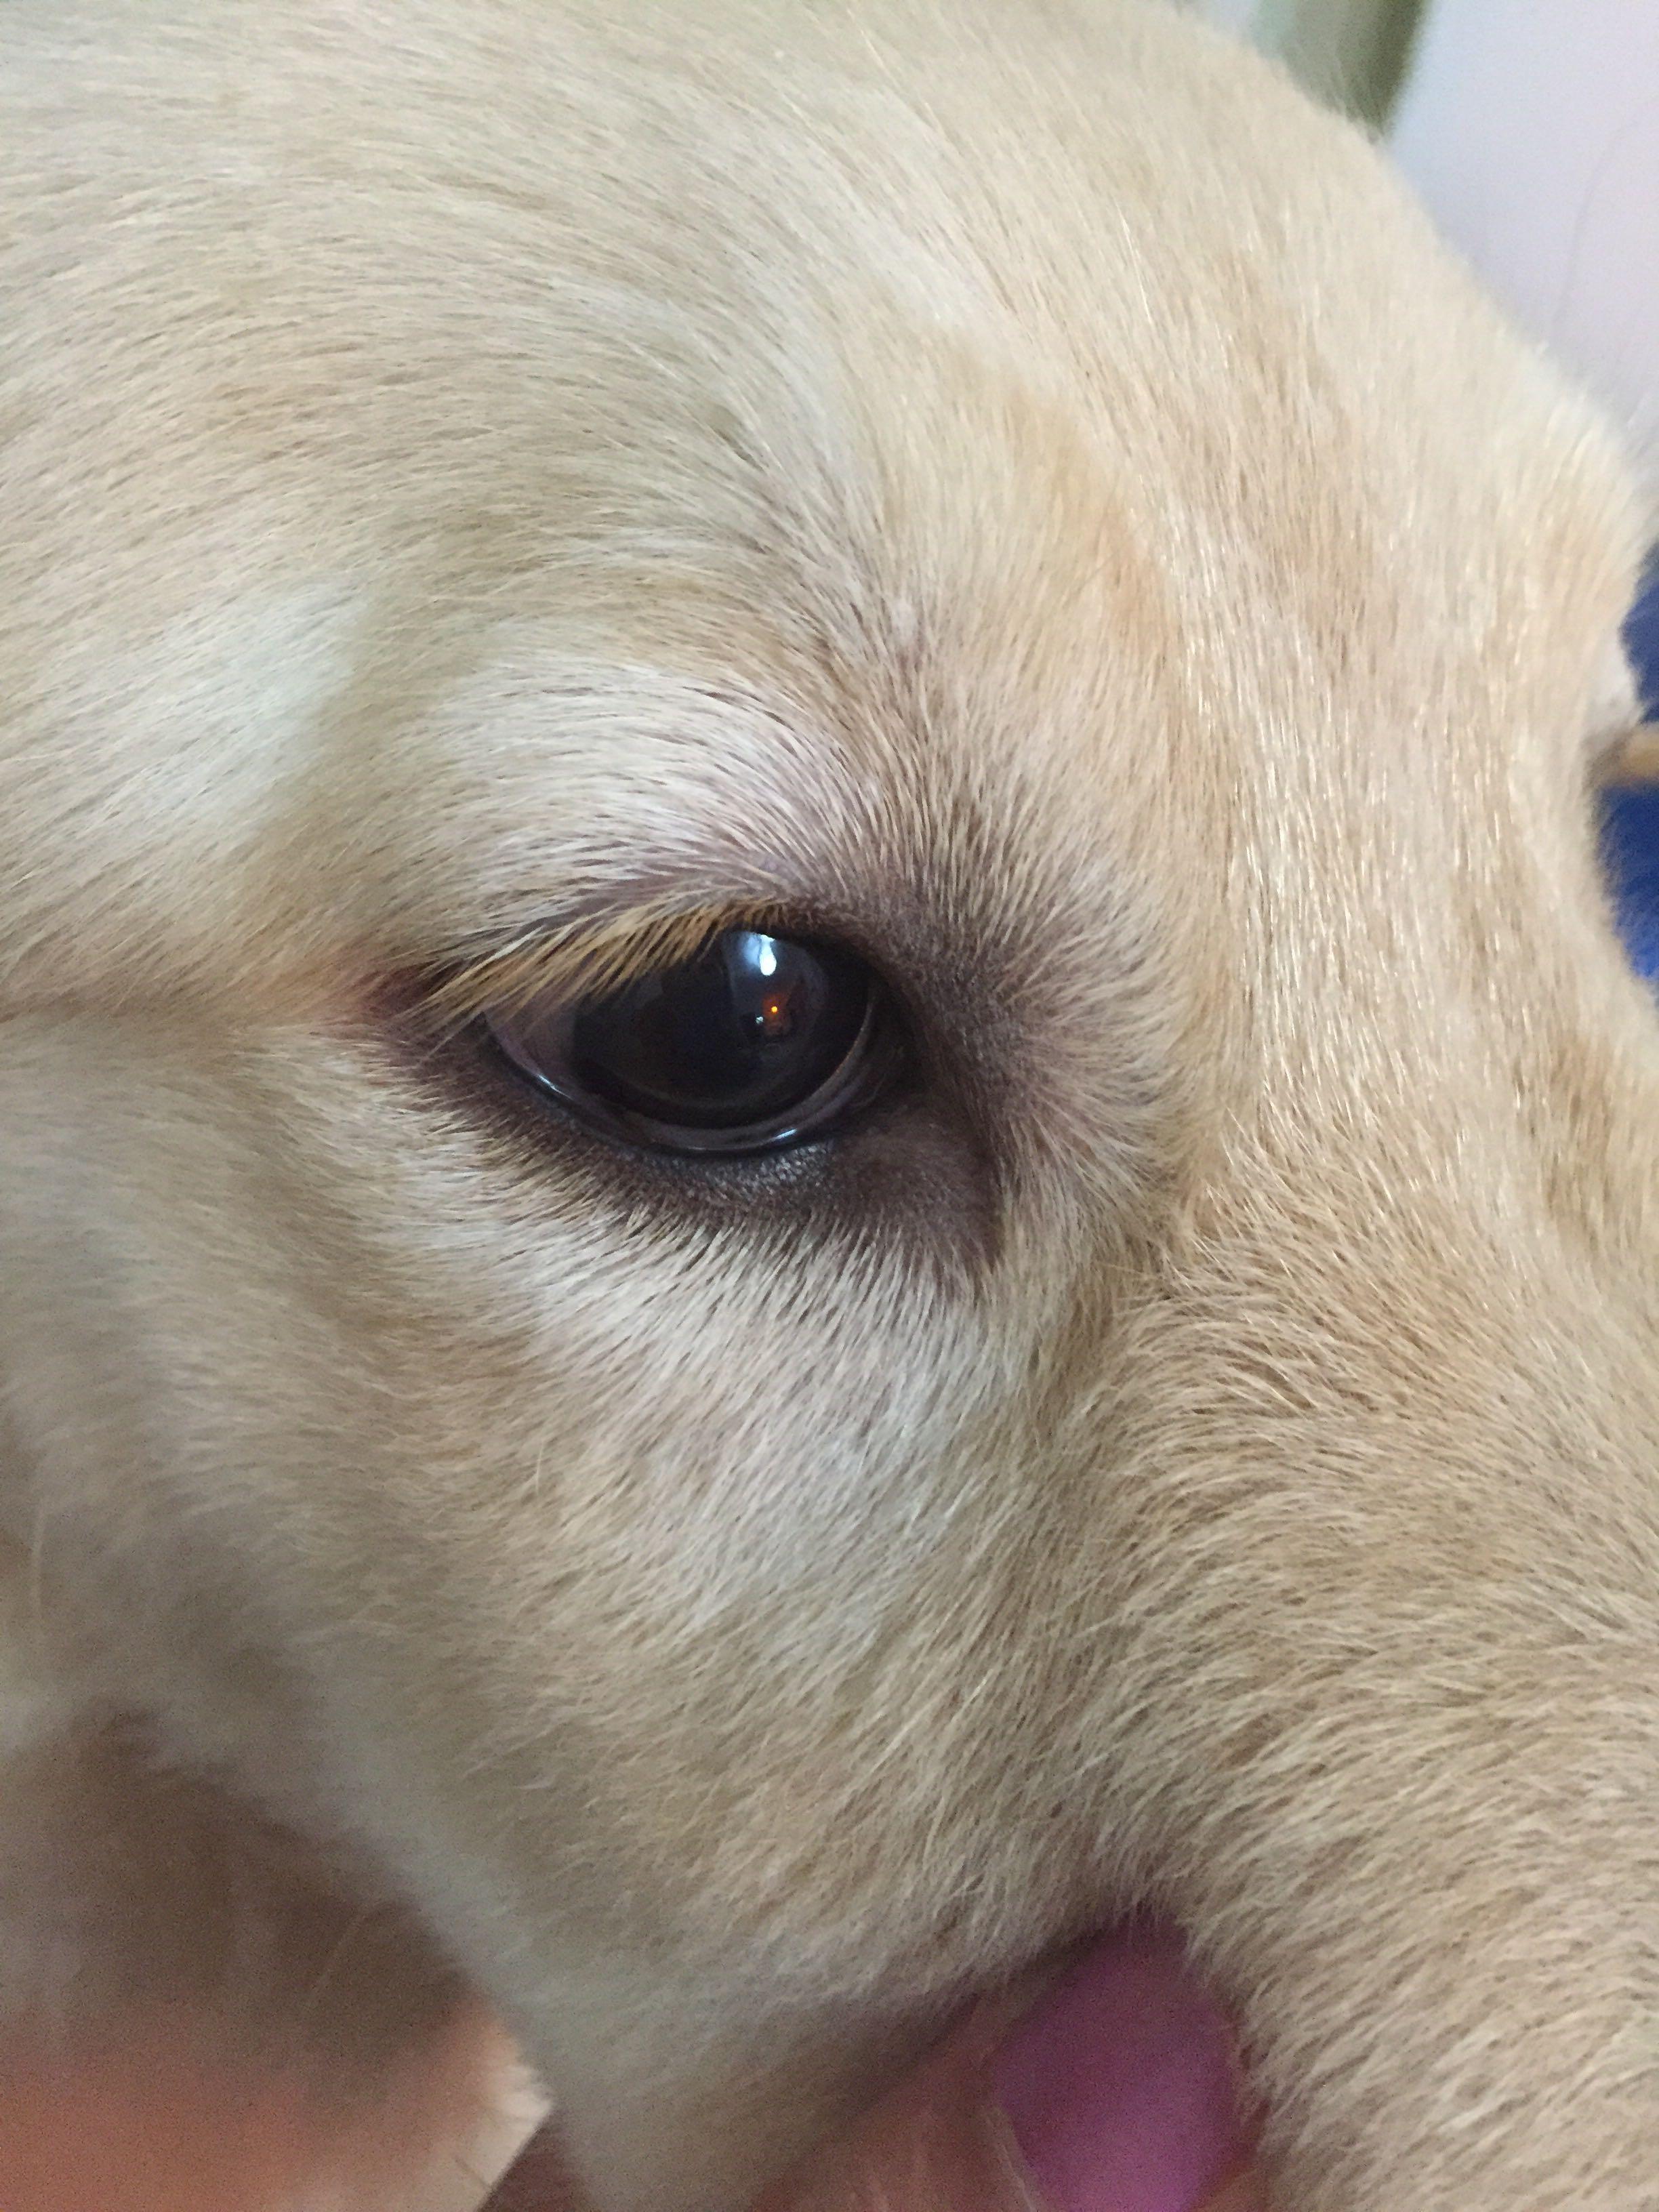 请问狗狗眼睛这样是生病了吗?